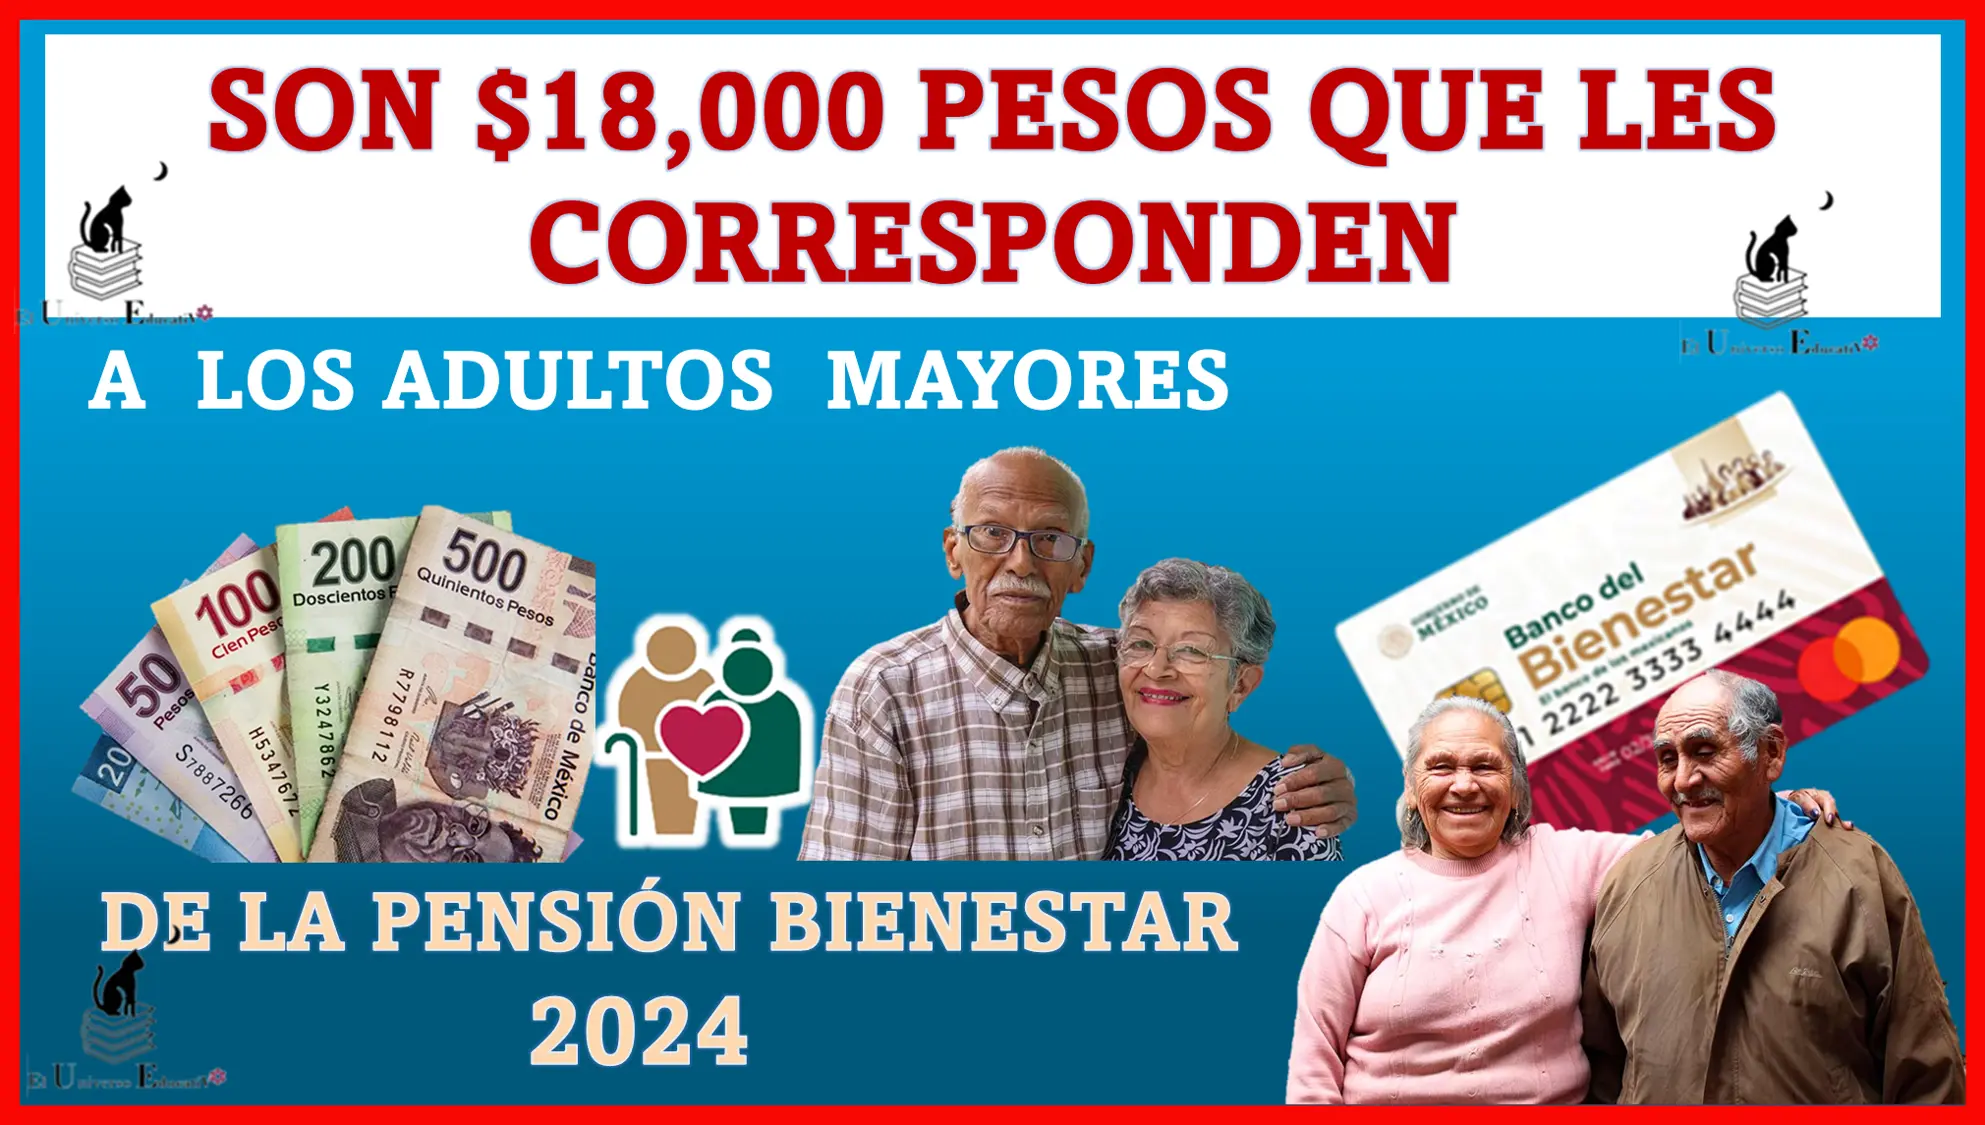 Son $18,000 pesos que les corresponden a los adultos mayores de la Pensión para el Bienestar de este año 2024